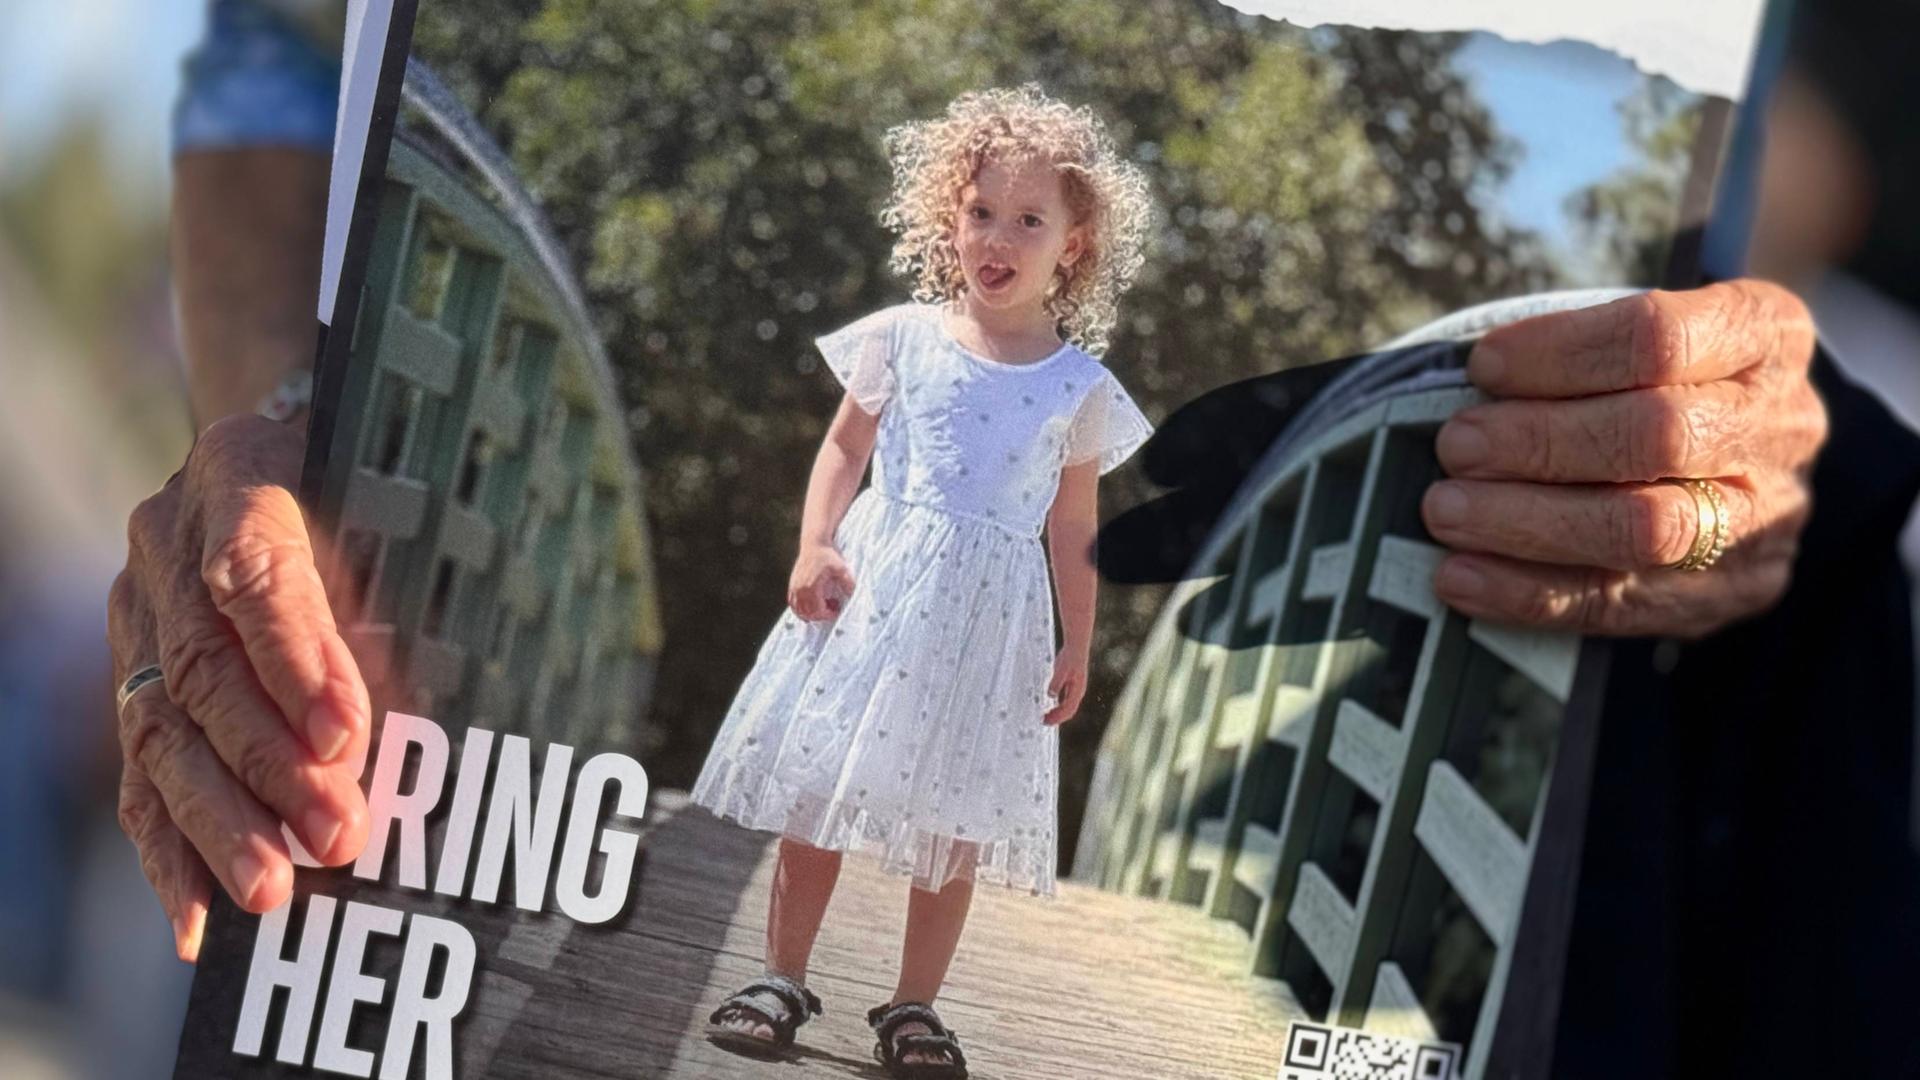 Auf einem Plakat steht: "Bring Her Home Now!" Ein kleines Mädchen im Kleid ist darauf zu sehen, gehalten von alten Händen. 